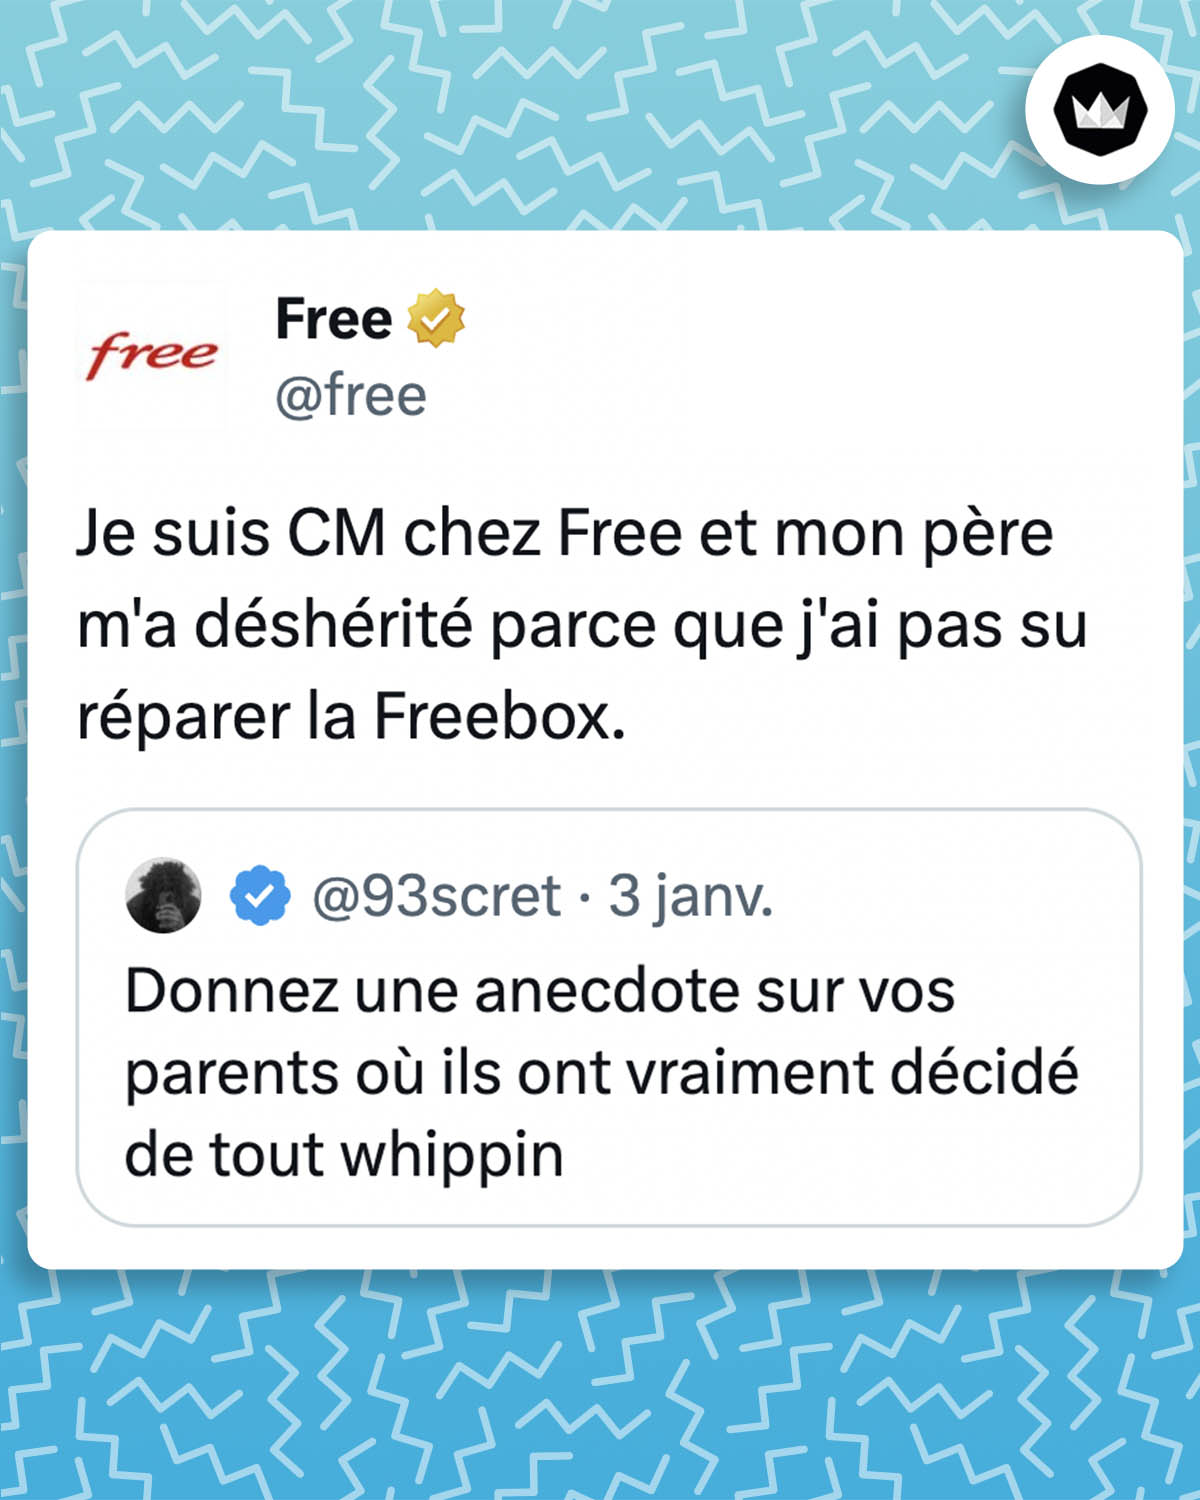 Tweet de @free : "Je suis CM chez Free et mon père m'a déshérité parce que j'ai pas su réparer la Freebox." Il s'agit d'une réponse au tweet de @93scret : "Donnez une anecdote sur vos parents où ils ont vraiment décidé de tout whippin"